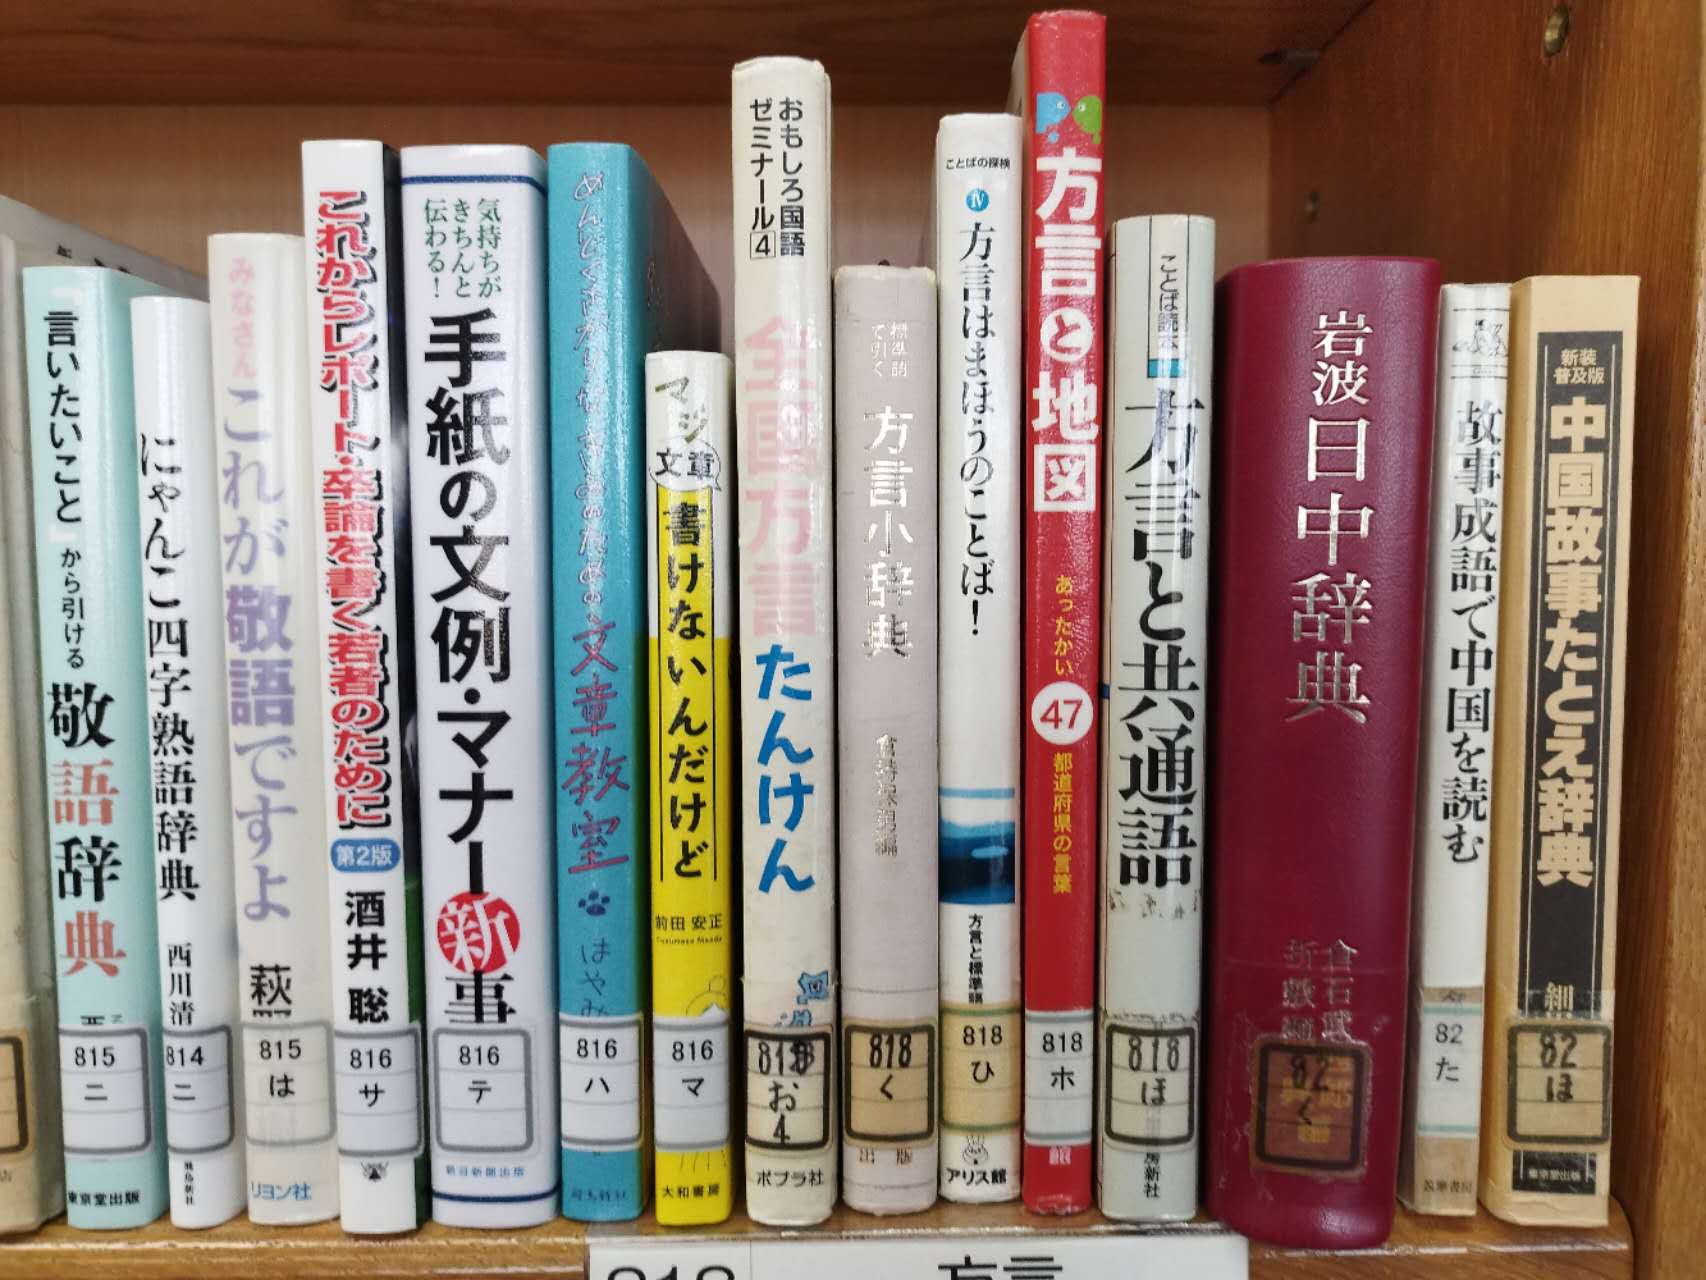 今日はちょうど娘の中学校に行ってきました。中学校の図書館はこんな感じですよと、みなさんに紹介いたします。中国語に関する本はもちろん置いてあります。【希望大家多读汉语书。书中自有黄金屋】